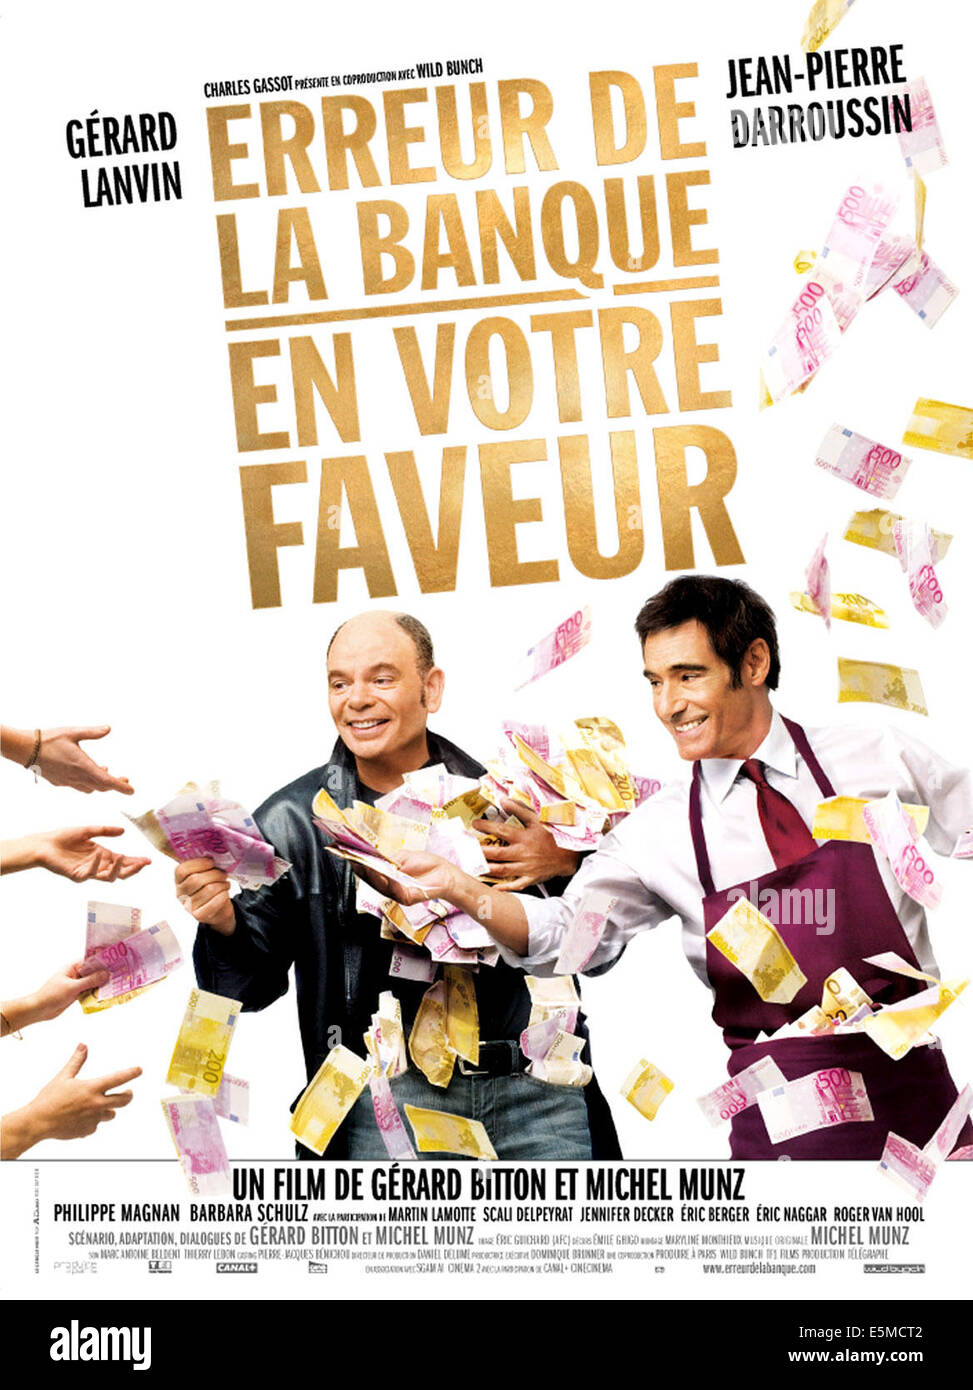 ERREUR DE LA BANQUE EN VOTRE FAVEUR, French poster art, from left: Jean-Pierre Darroussin, Gerard Lanvin, 2009. ©Wild Bunch Stock Photo